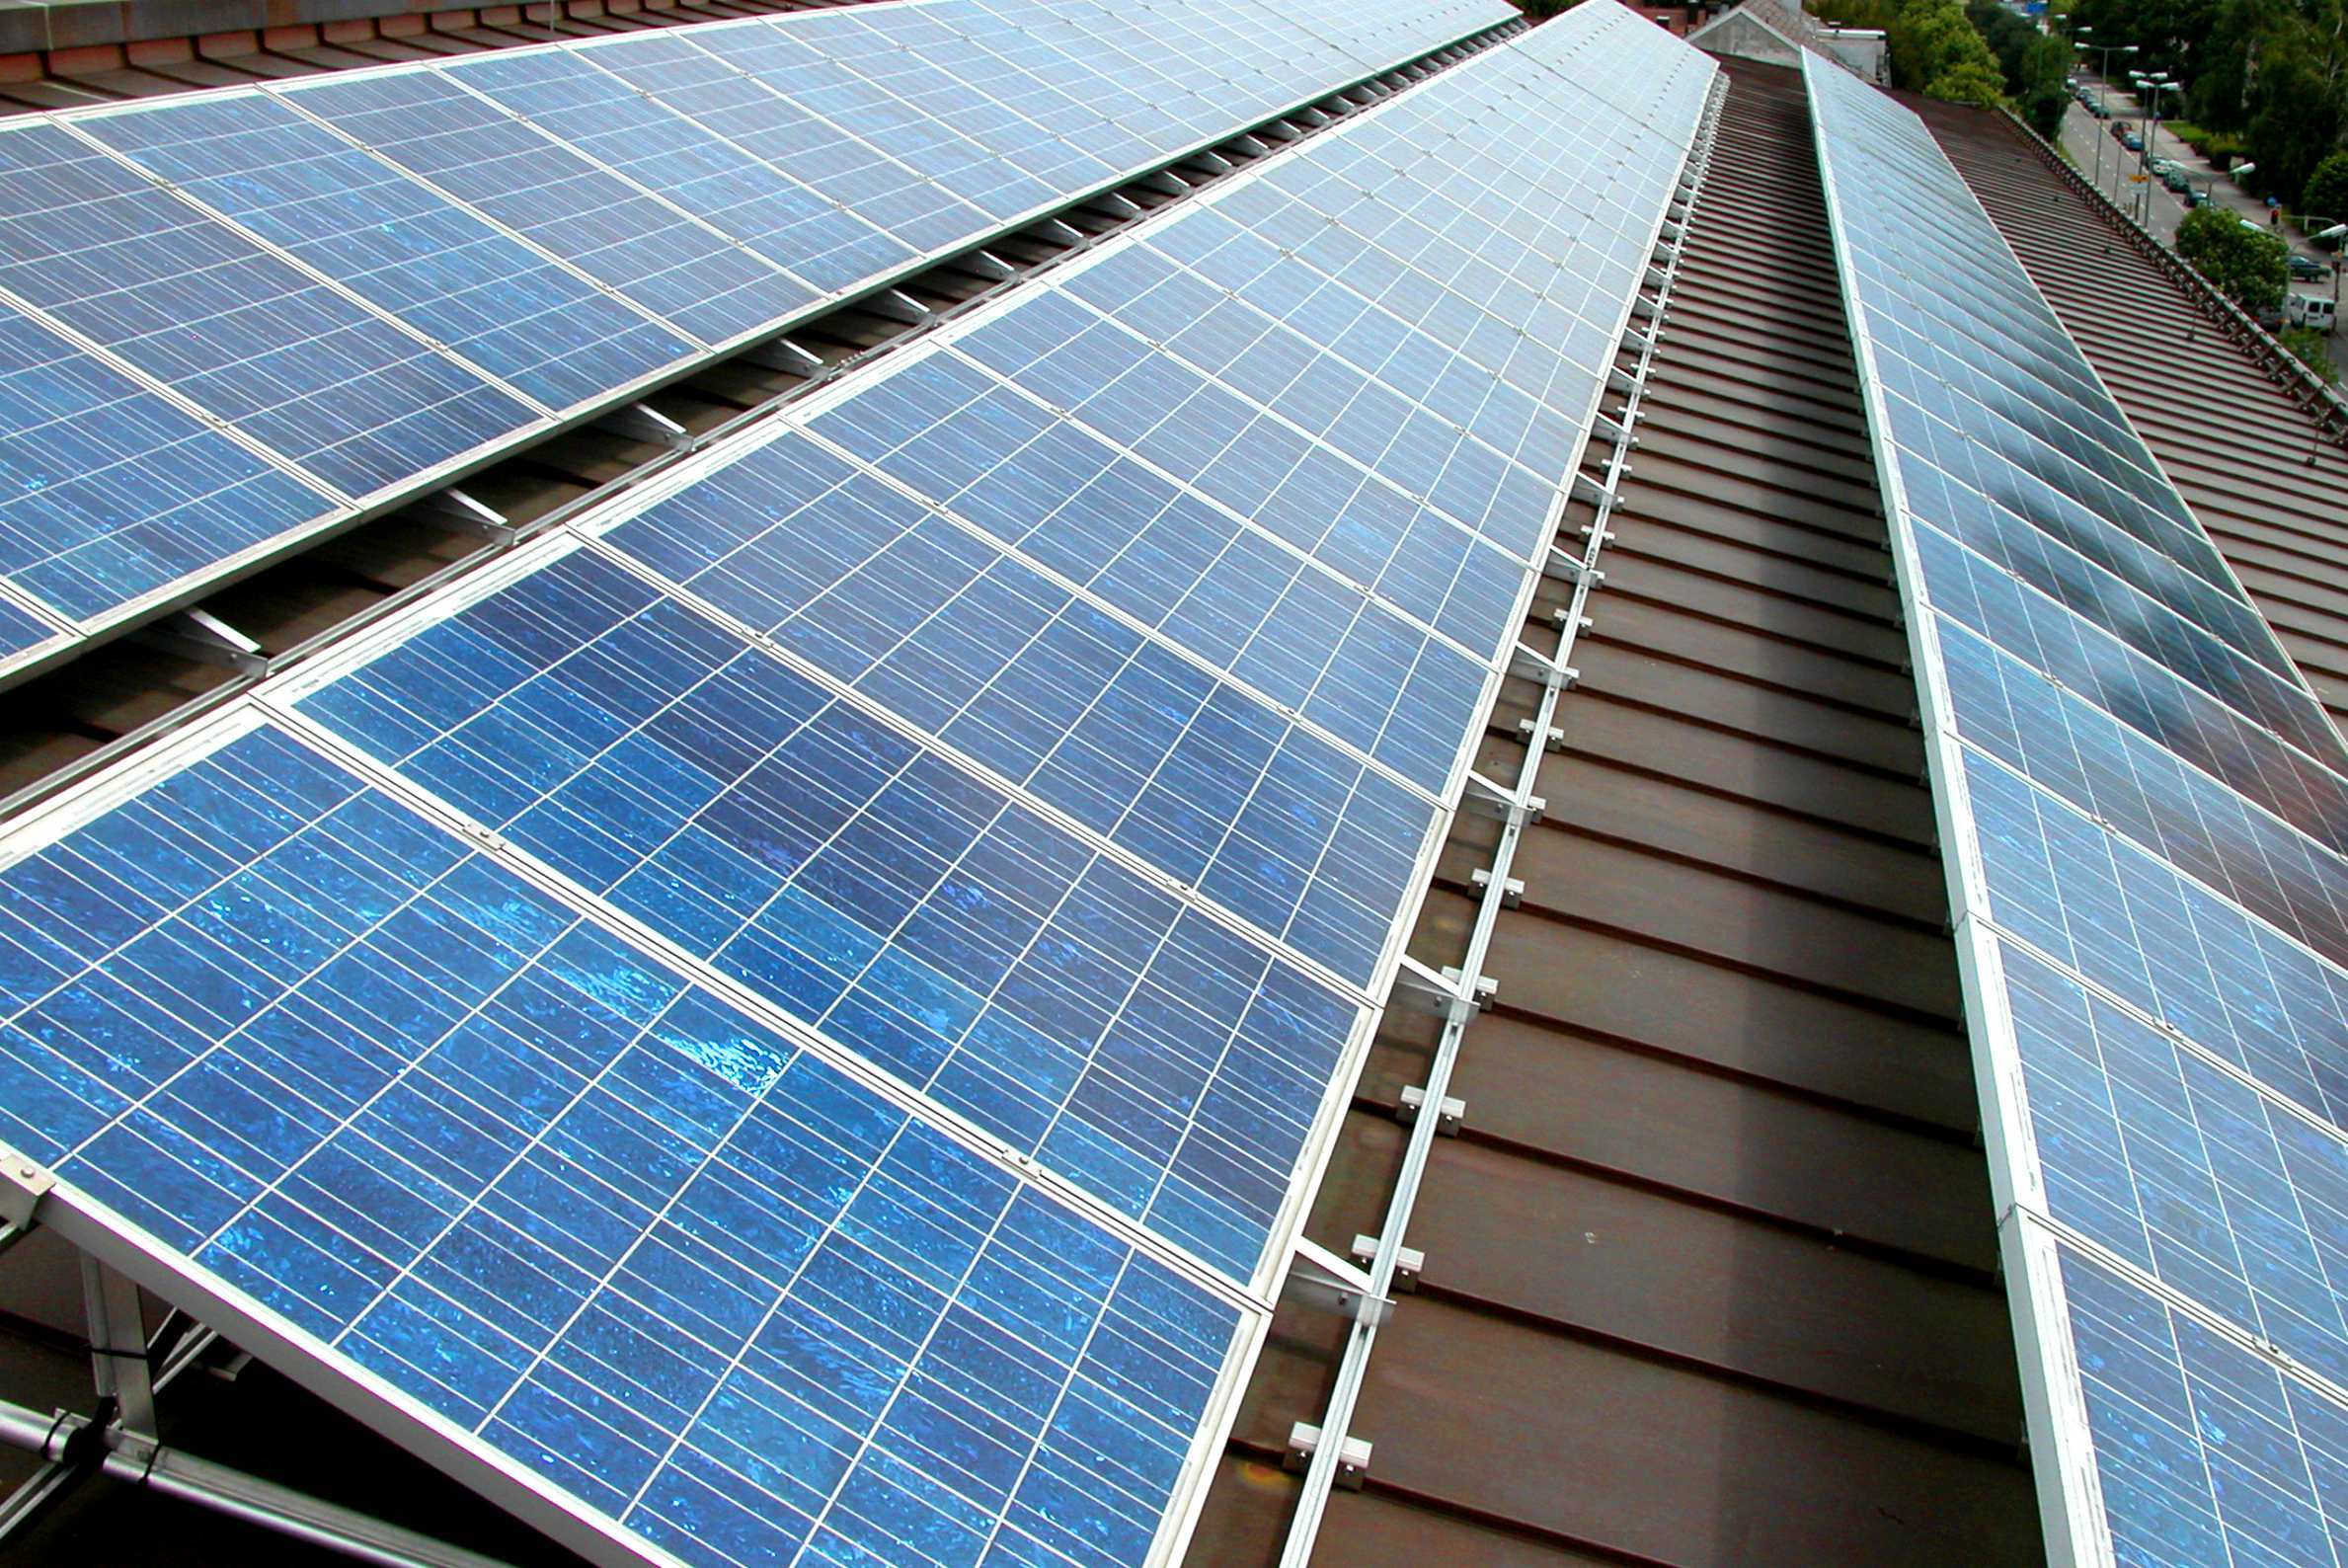 Solar power plant photovoltaik anlage mgs gewerbehof foto swm